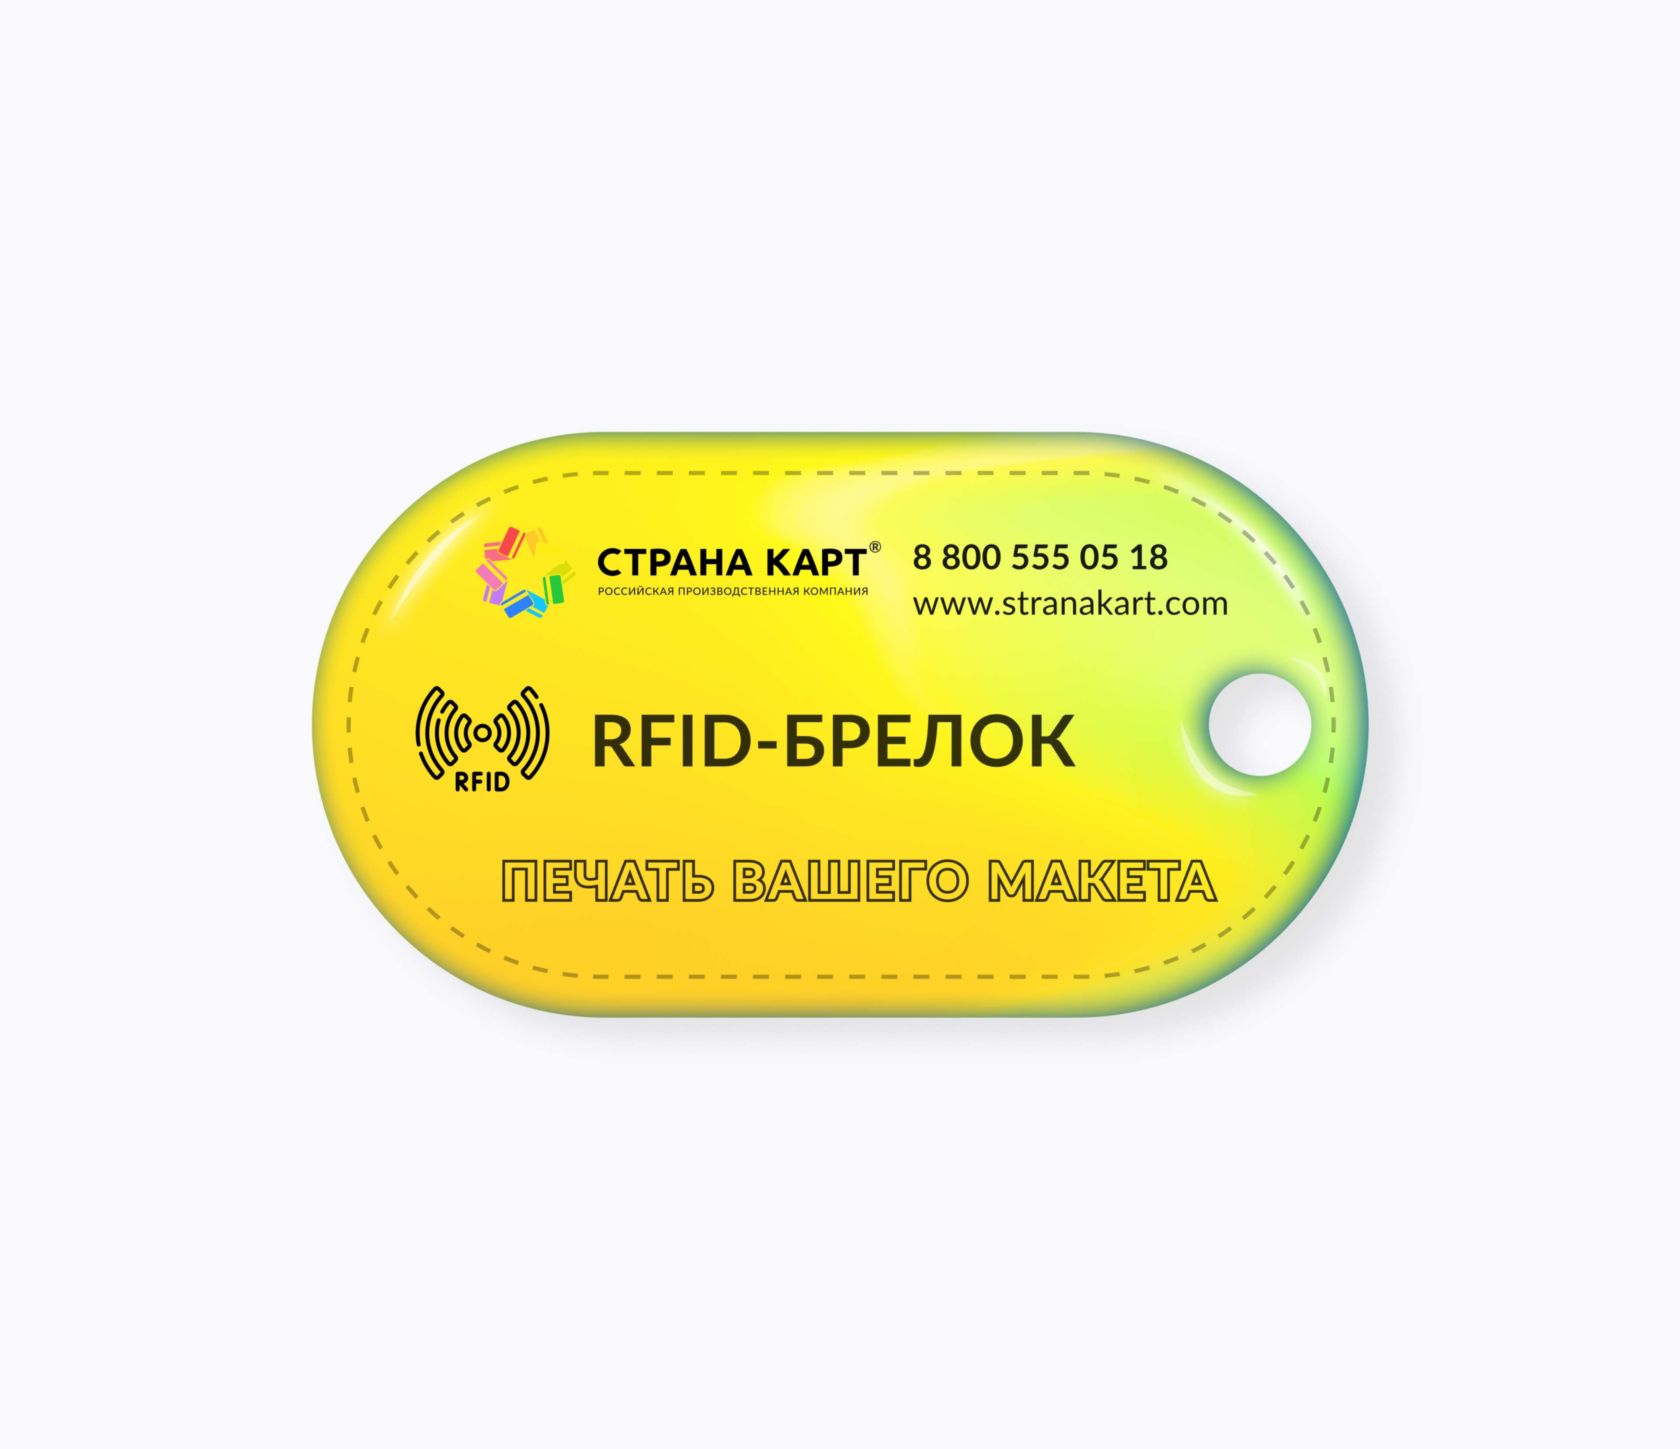 Овальные RFID-брелоки NEOKEY® с чипом skipass для горнолыжных курортов RFID-брелоки NEOKEY® с чипом skipass для горнолыжных курортов